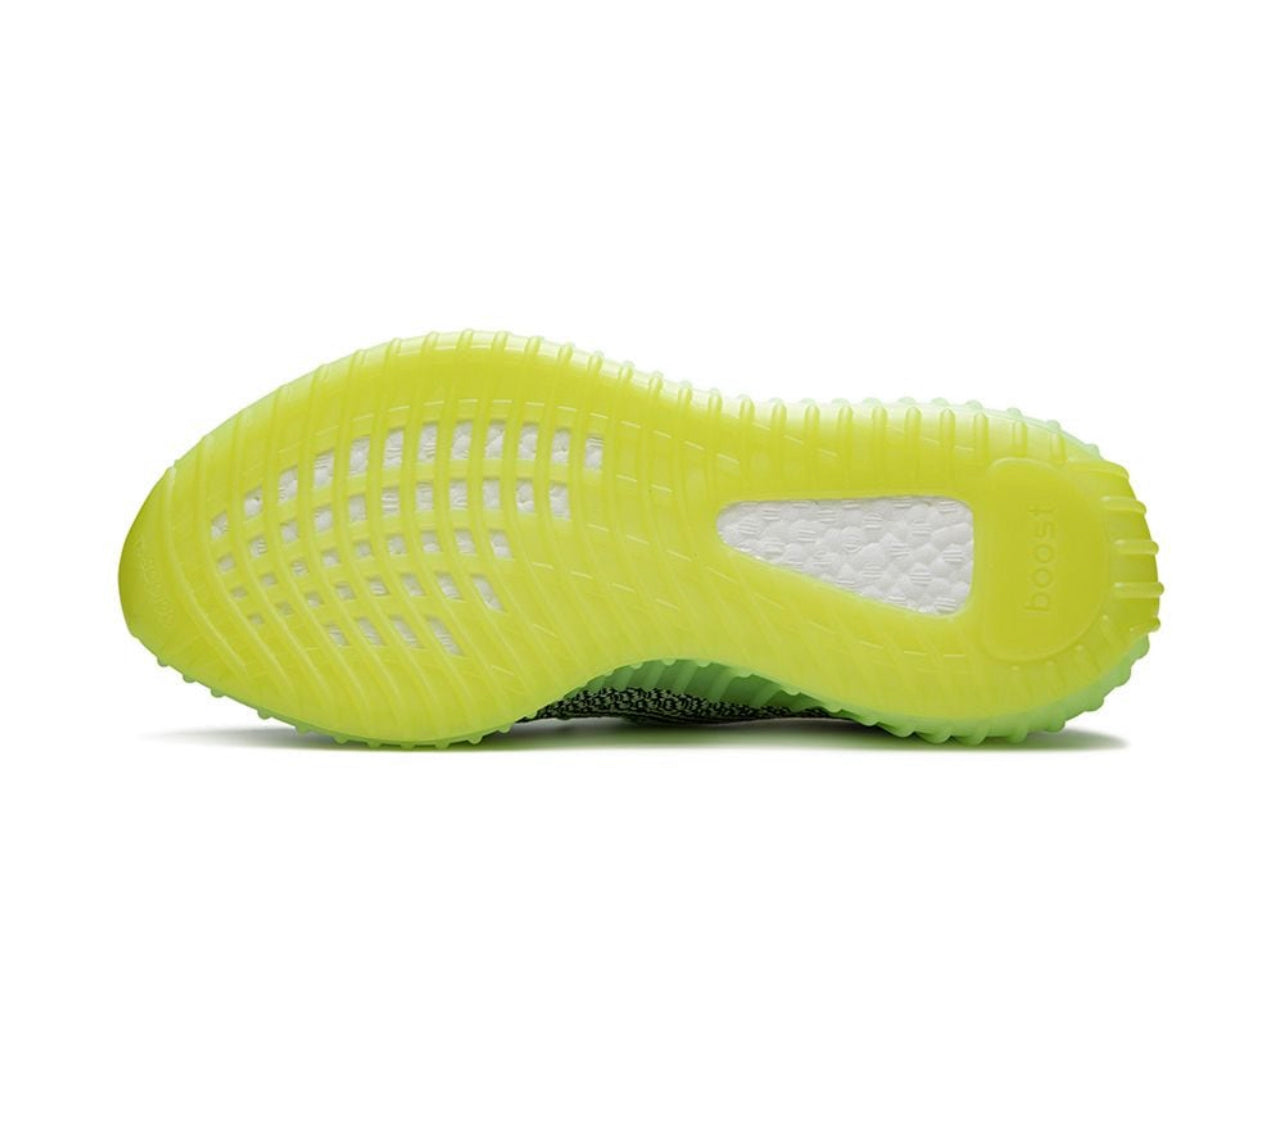 Adidas Yeezy Yeezy Boost 350 V2 